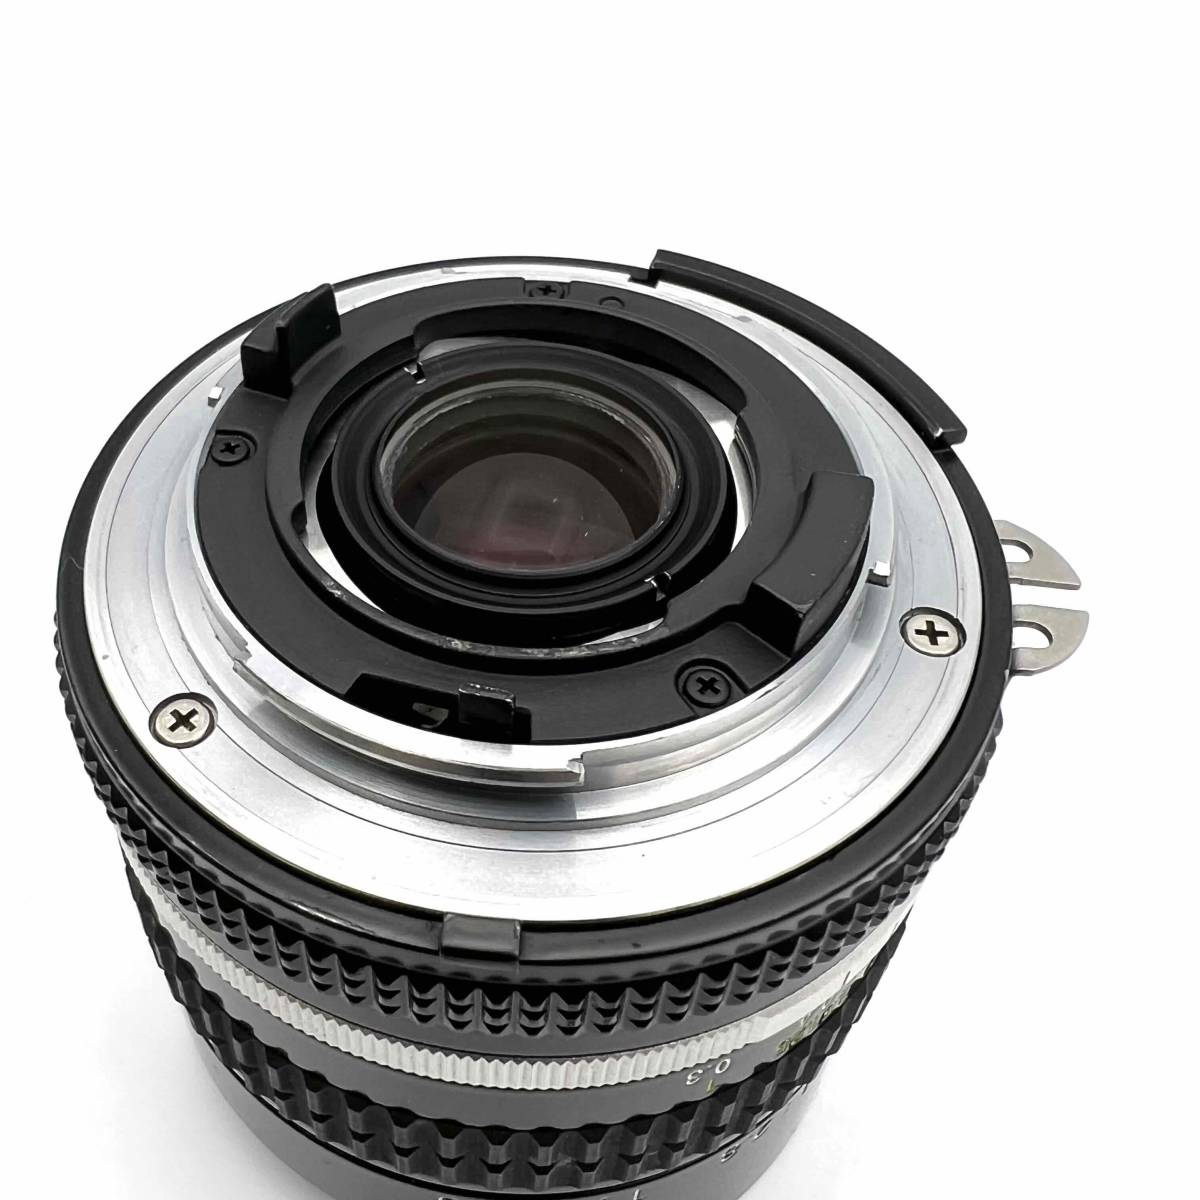  ニコン Ai-S Fisheye-Nikkor 16mm F2.8 Nikon MF一眼用交換レンズ 魚眼レンズ 部品欠損 動作未確認 ジャンク品_画像7